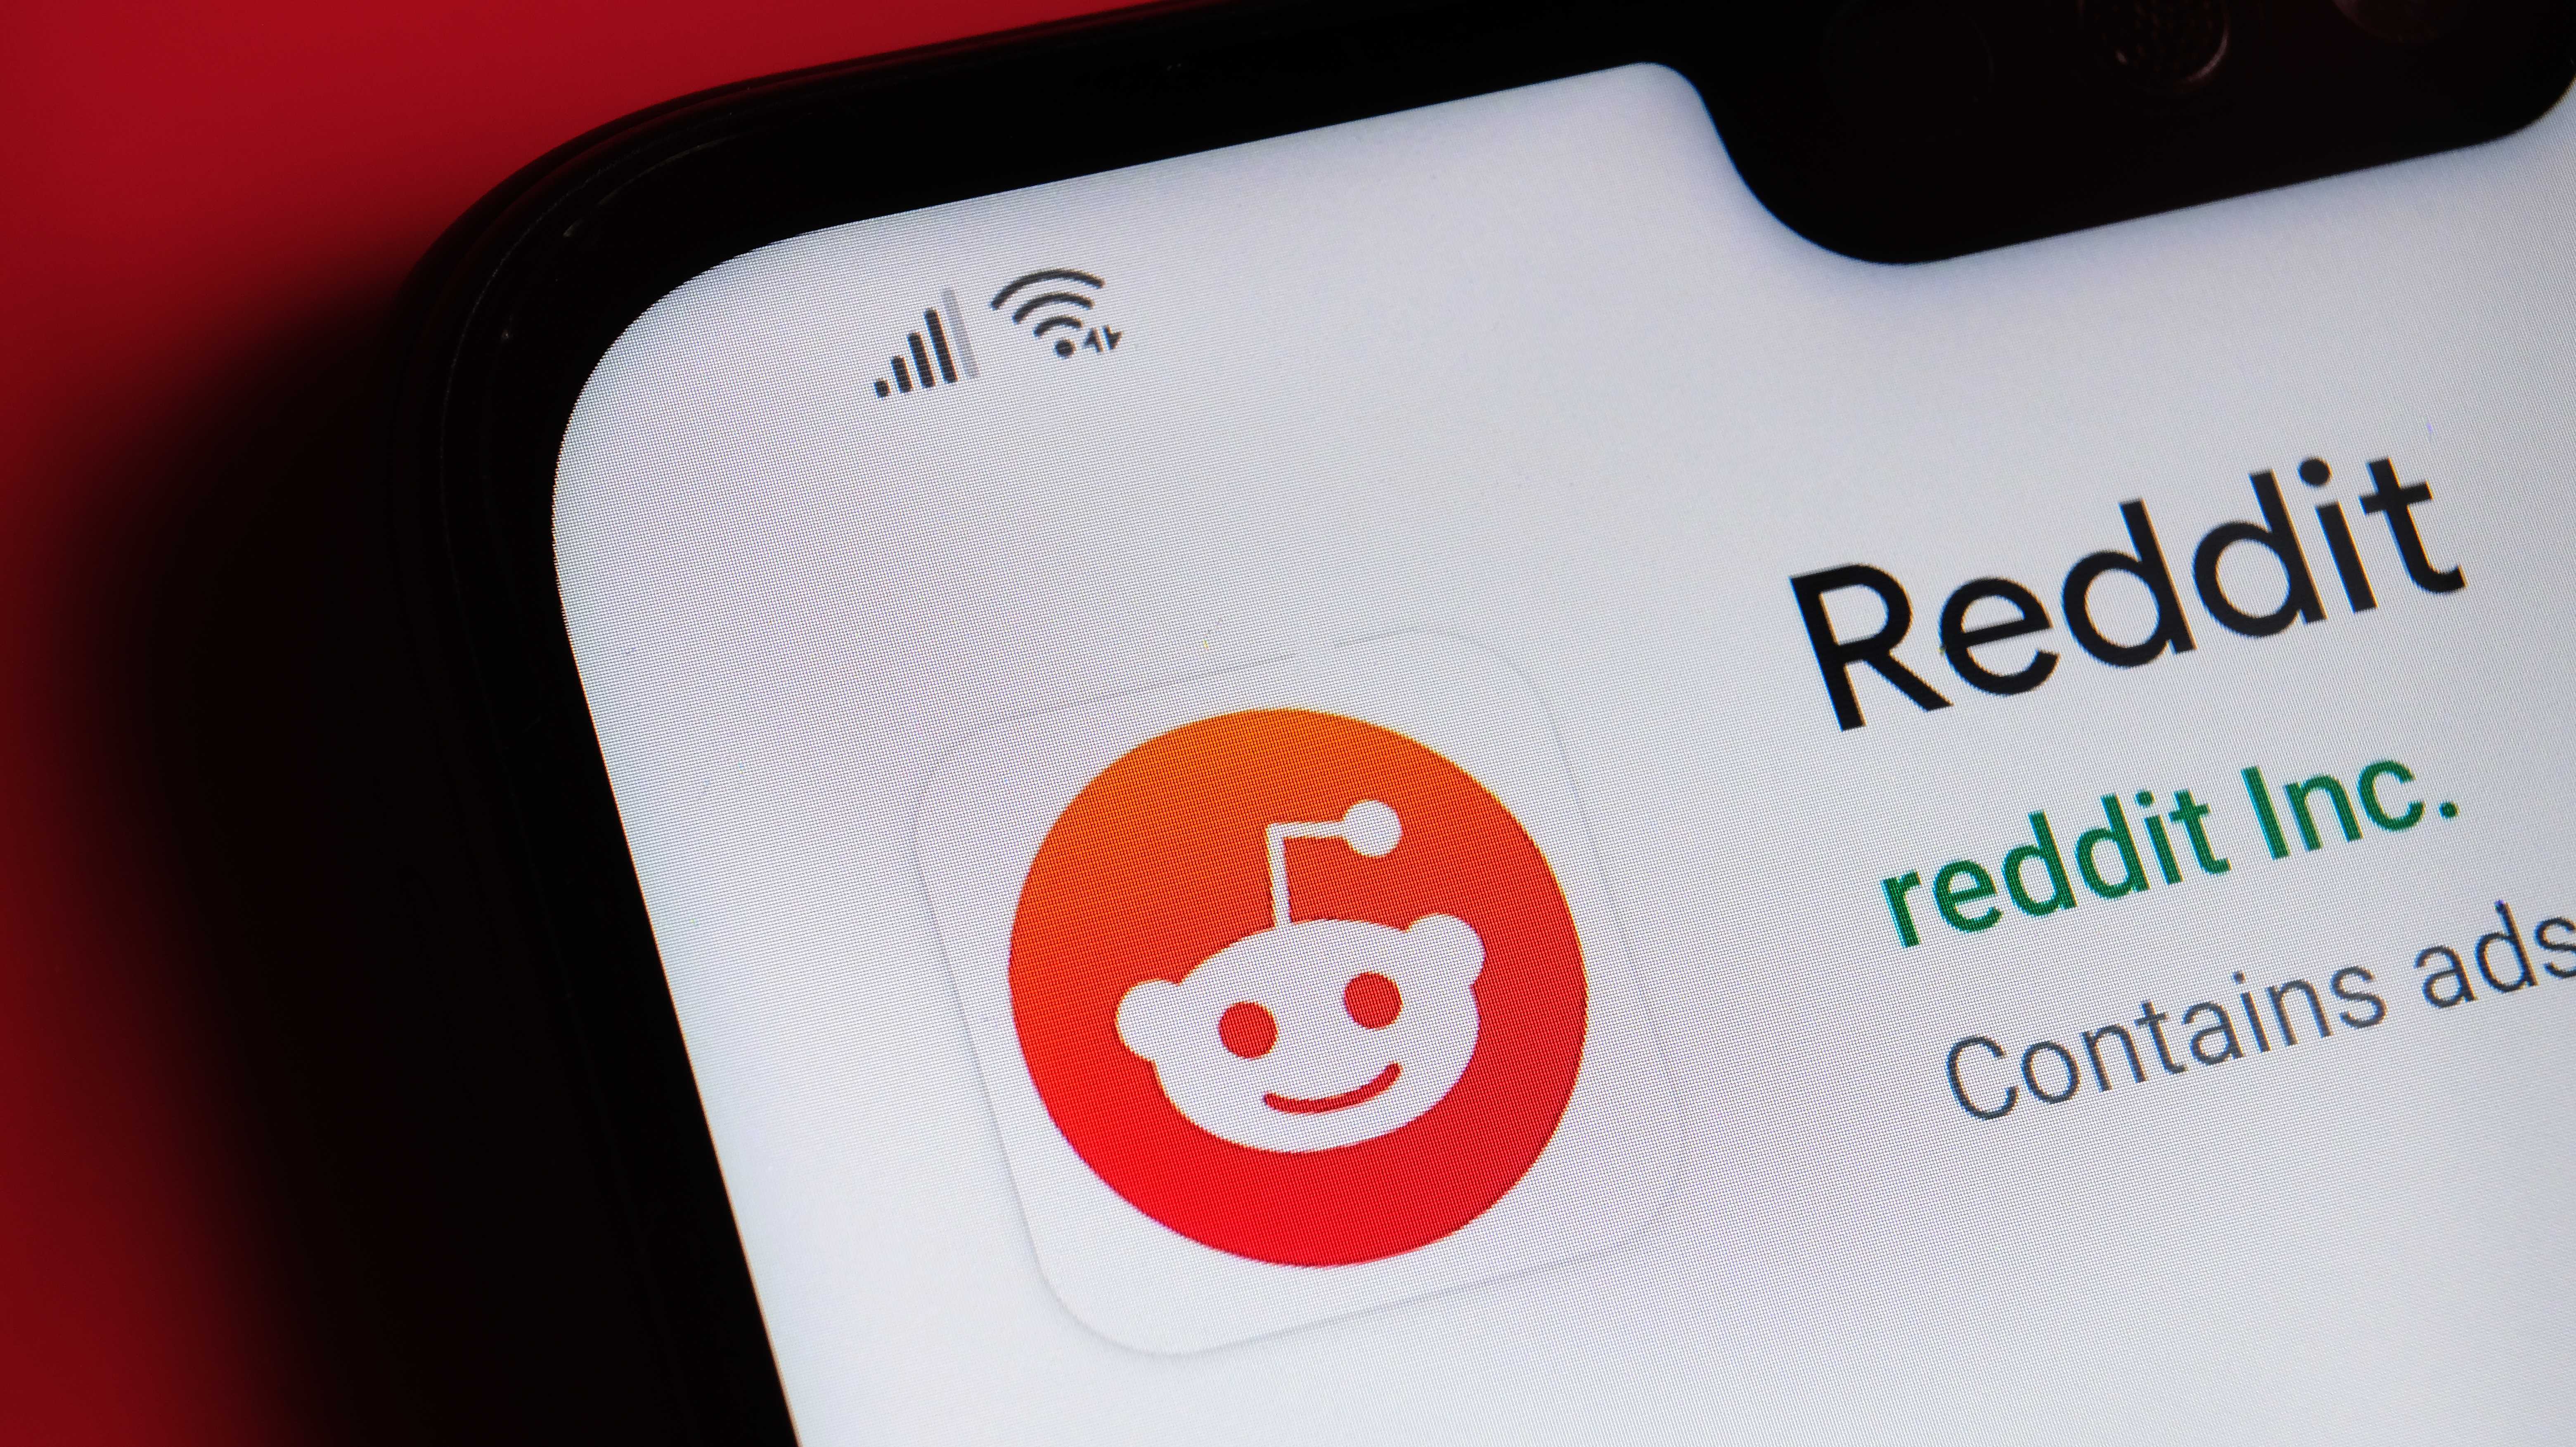 Reddit-Logo auf Smartphone-Bildschirm